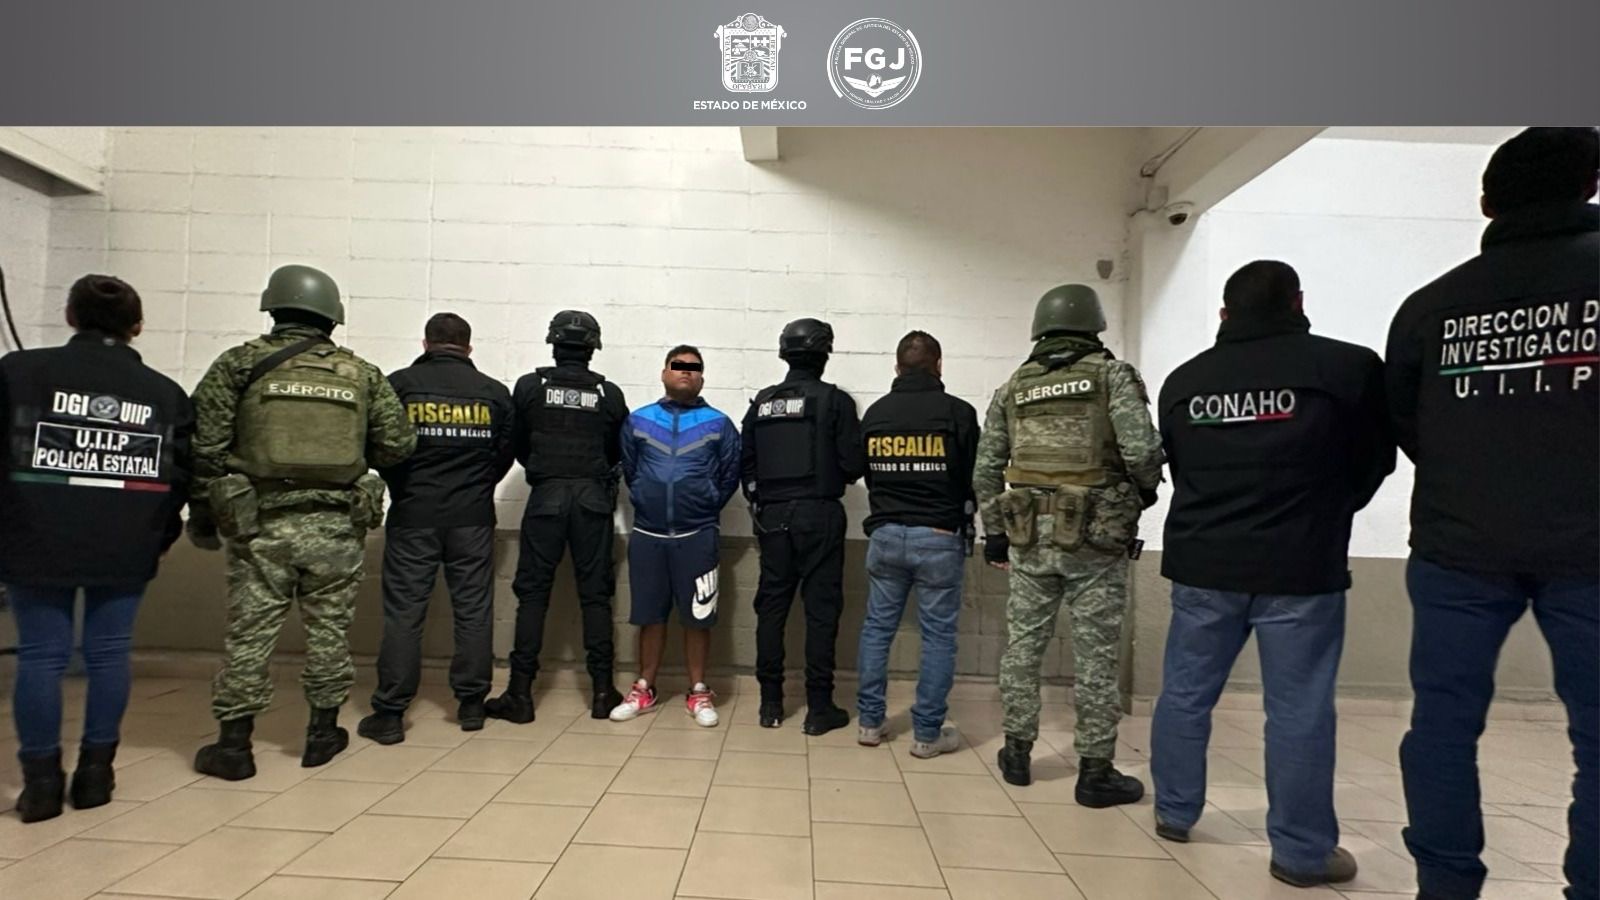 Detienen al “Comandante Marquez” de la FM, señalado por el delito de extorsión en el Valle de Toluca